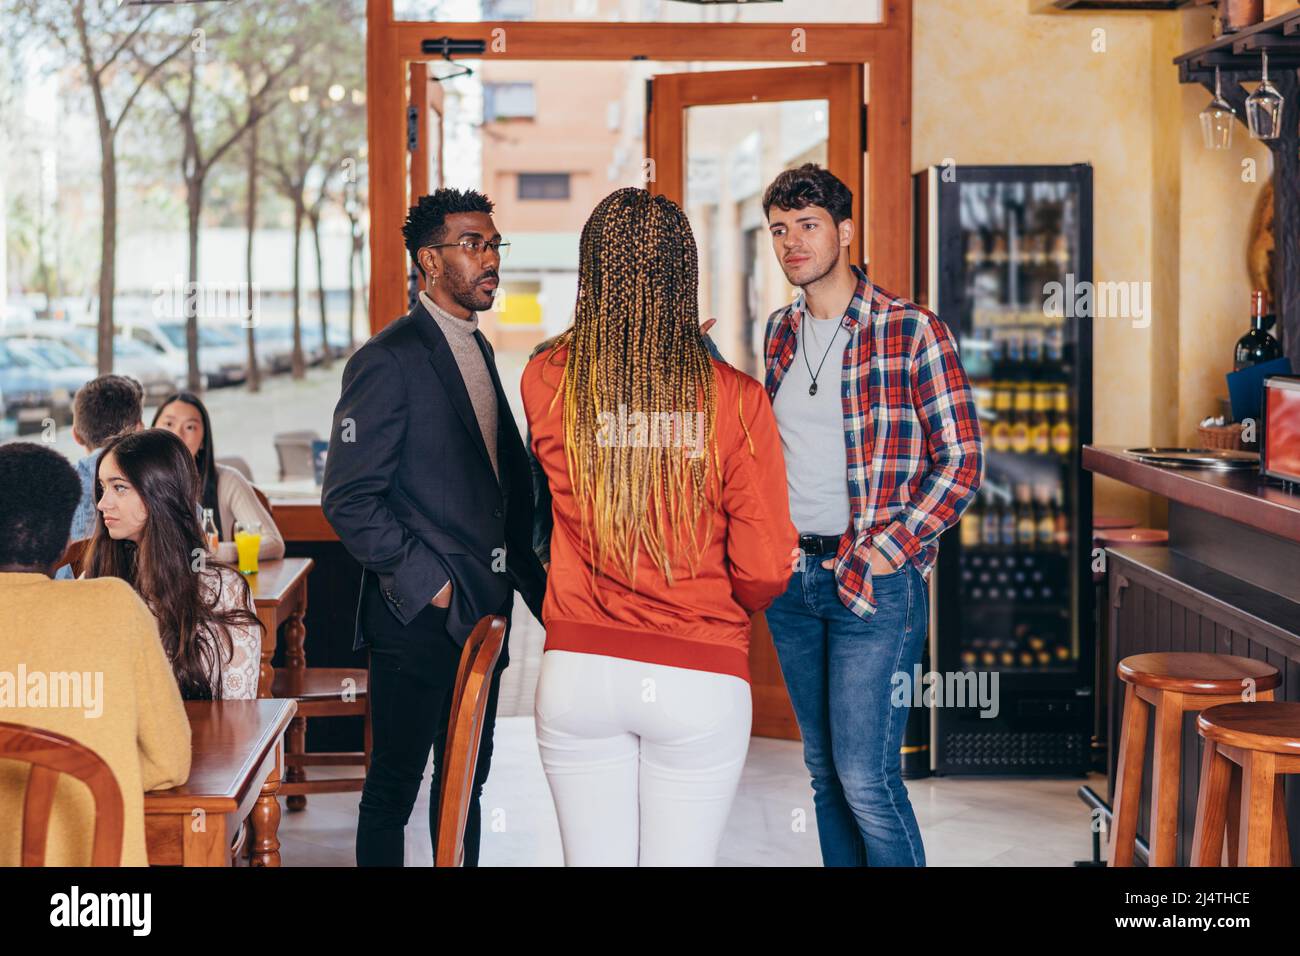 3 personas de diferentes etnias conversan dentro de un bar Foto de stock